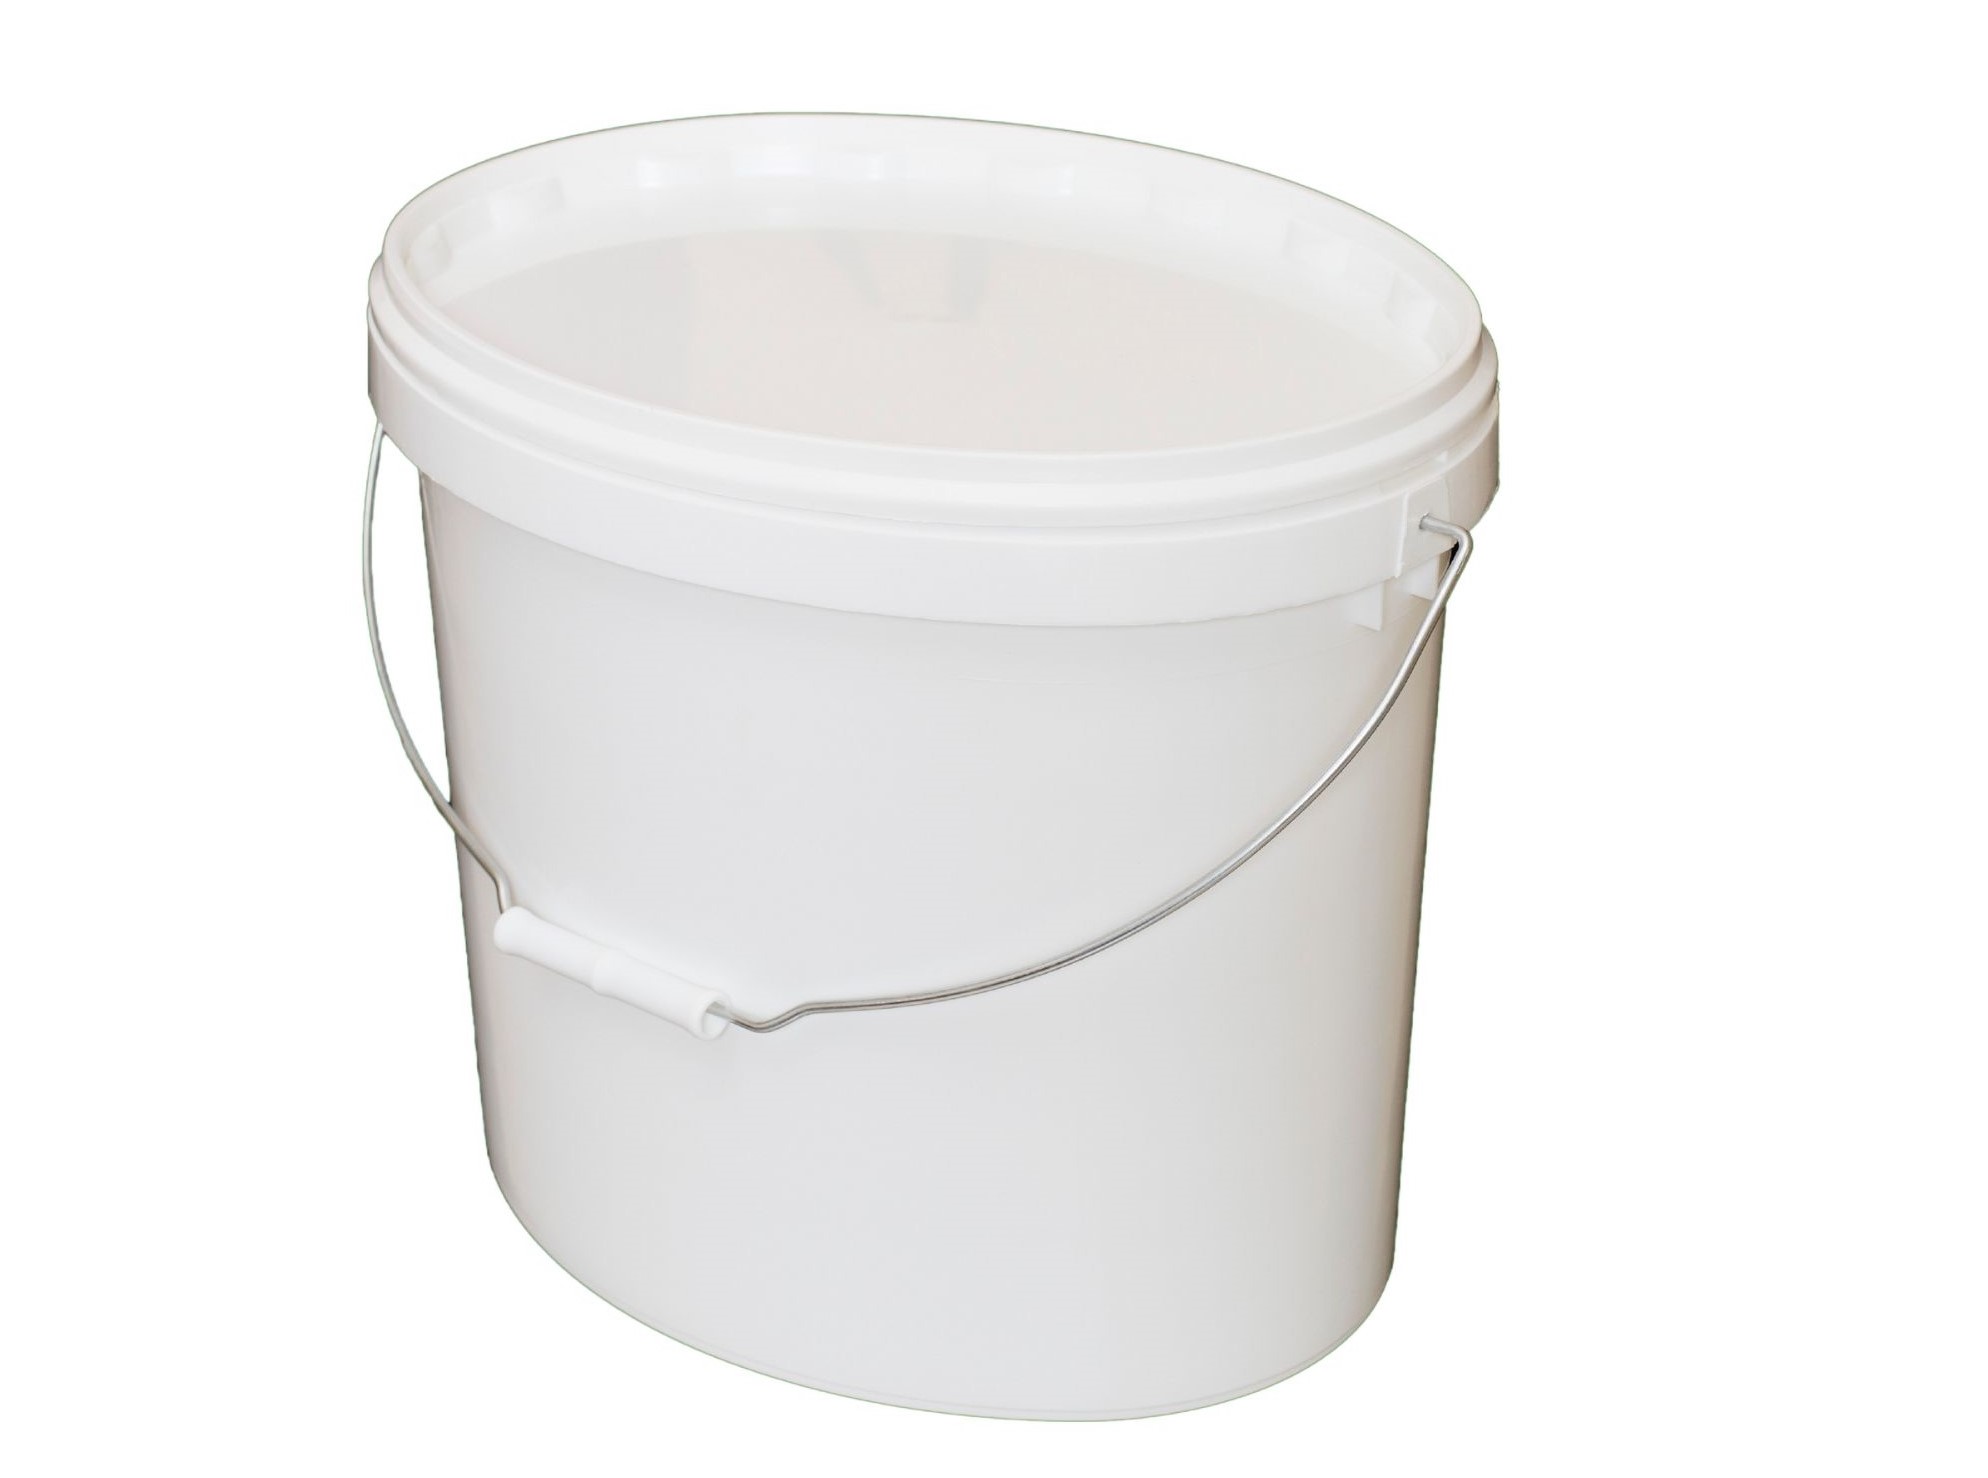 Műanyag ovális vödör, fehér, 18 liter (magas)